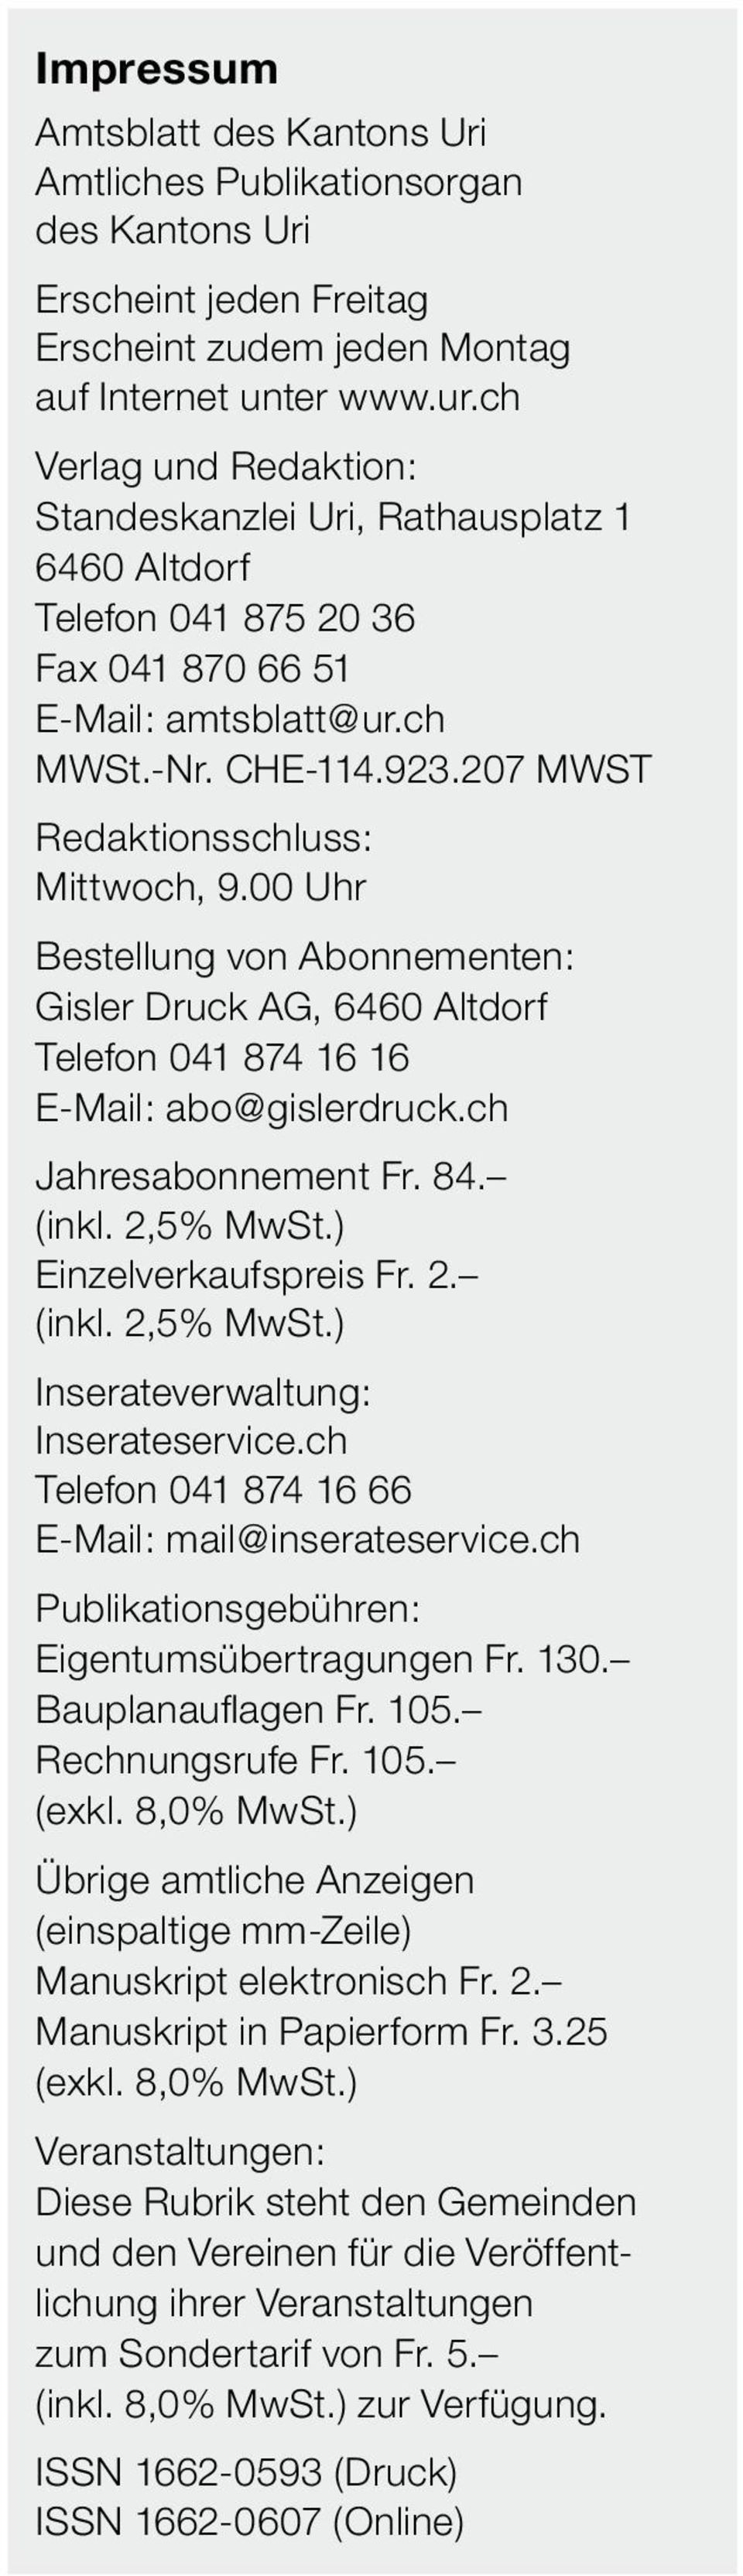 00 Uhr Bestellung von Abonnementen: Gisler Druck AG, 6460 Altdorf Telefon 041 874 16 16 E-Mail: abo@gislerdruck.ch Jahresabonnement Fr. 84. (inkl. 2,5% MwSt.) Einzelverkaufspreis Fr. 2. (inkl. 2,5% MwSt.) Inserateverwaltung: Inserateservice.